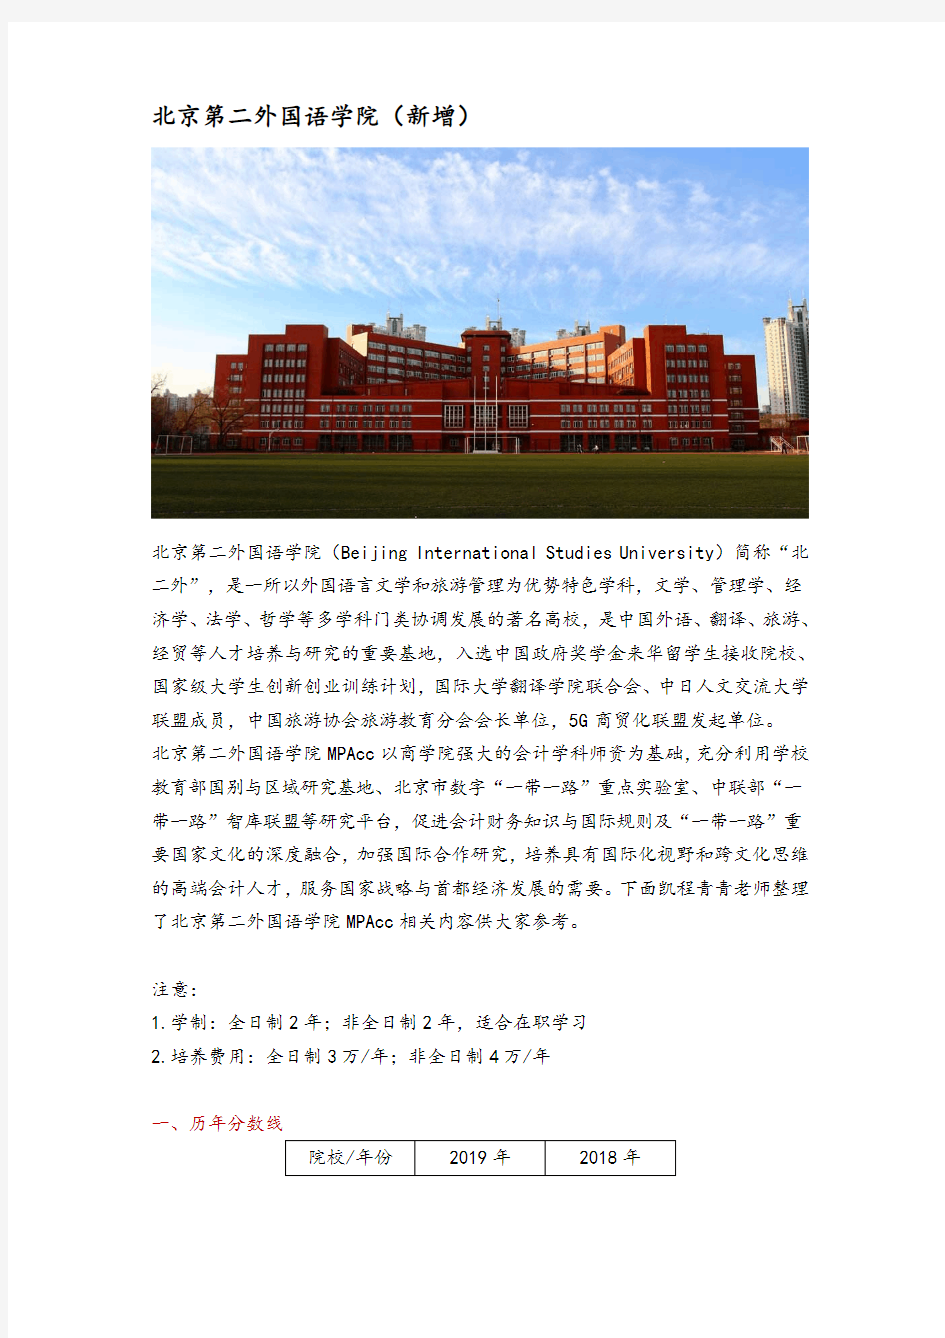 北京地区会计硕士(MPAcc)院校分析—北京第二外国语学院